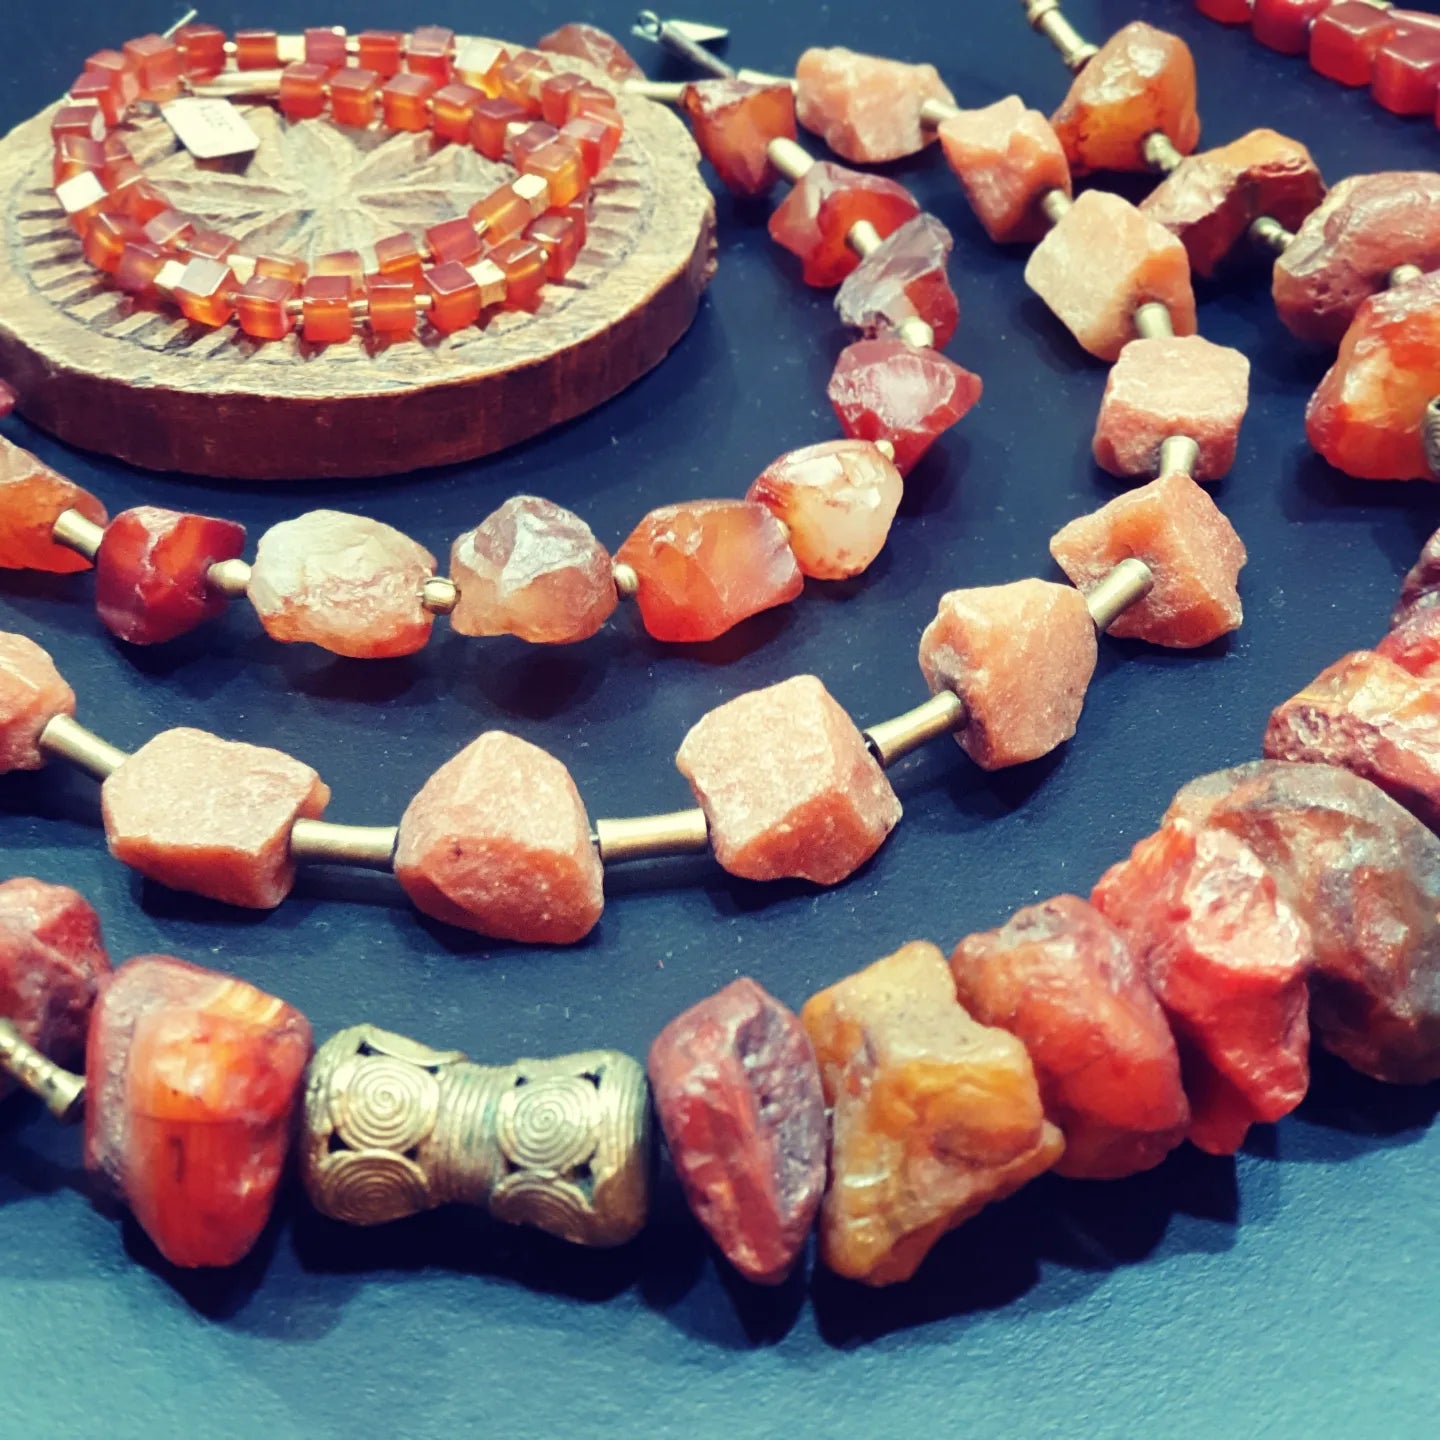 Carnelian stone jewelry from ambra jewelry